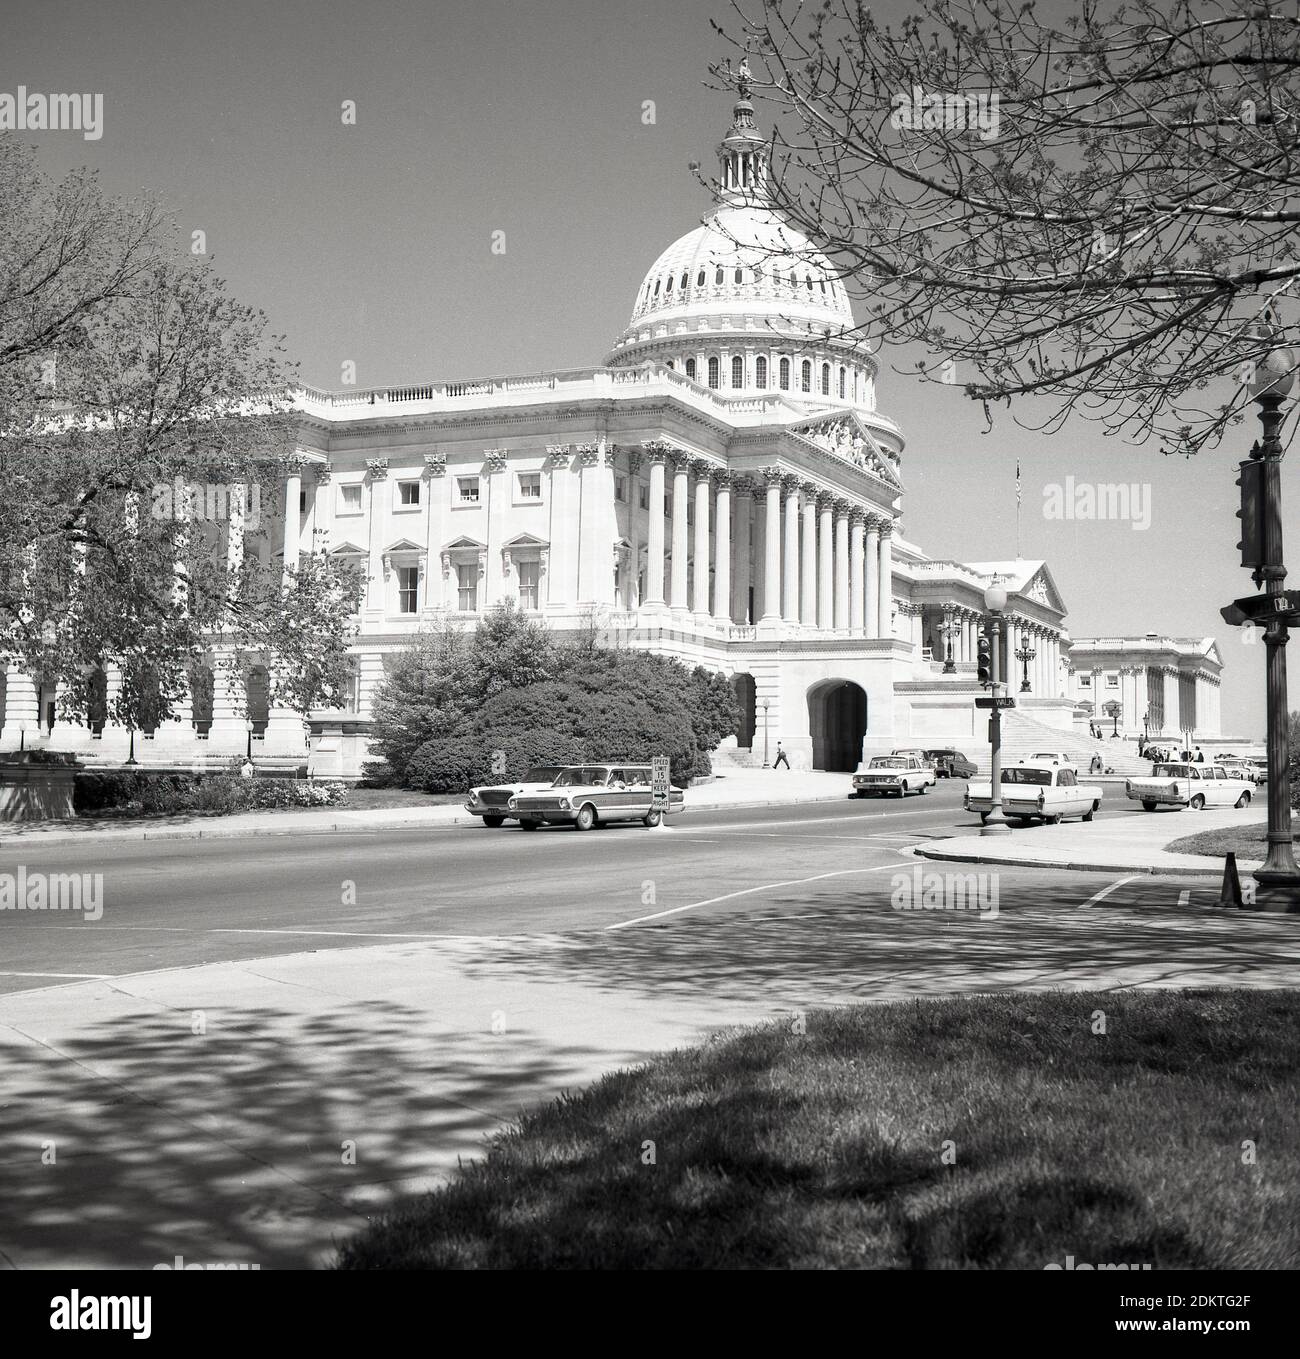 1960er Jahre, historischer Blick aus dieser Ära des Kapitols der Vereinigten Staaten auf Capitol Hill, Washington DC, USA. Das im neoklassizistischen Stil erbaute Gebäude mit einer Kuppel und großen Säulen ist Sitz des US-Kongresses, der Legislativabteilung der Bundesregierung und beherbergt die Kammern des Oberkörpers, des Senats und des Unterkörpers, des Repräsentantenhauses, die beiden Organe, die den Legislativzweig der amerikanischen Regierung bilden. Stockfoto